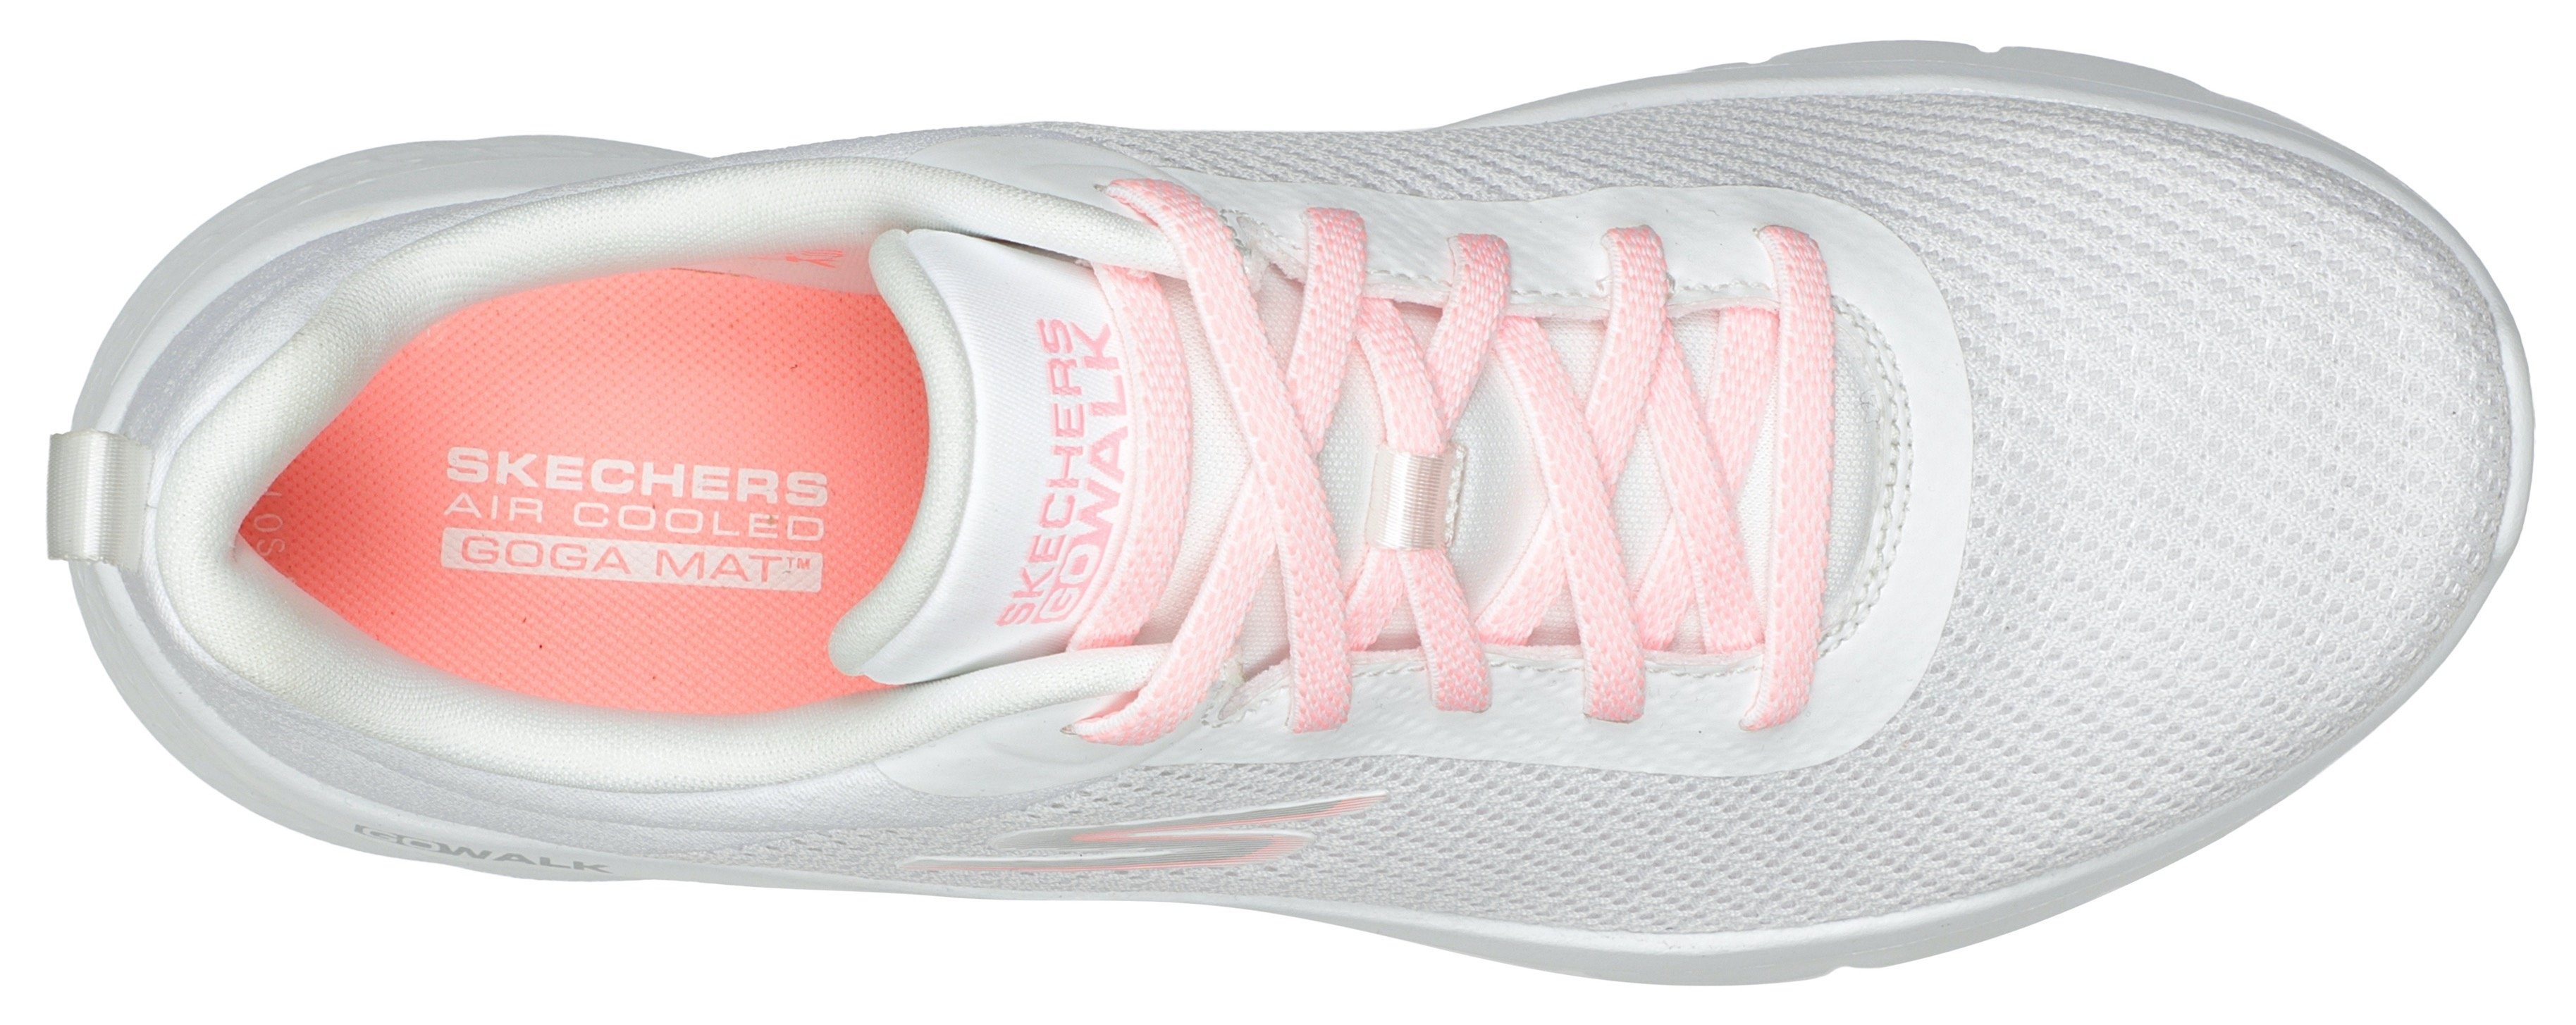 Skechers GO WALK FLEX ALANI Sneaker Maschinenwäsche geeignet weiß-rosa für Slip-On